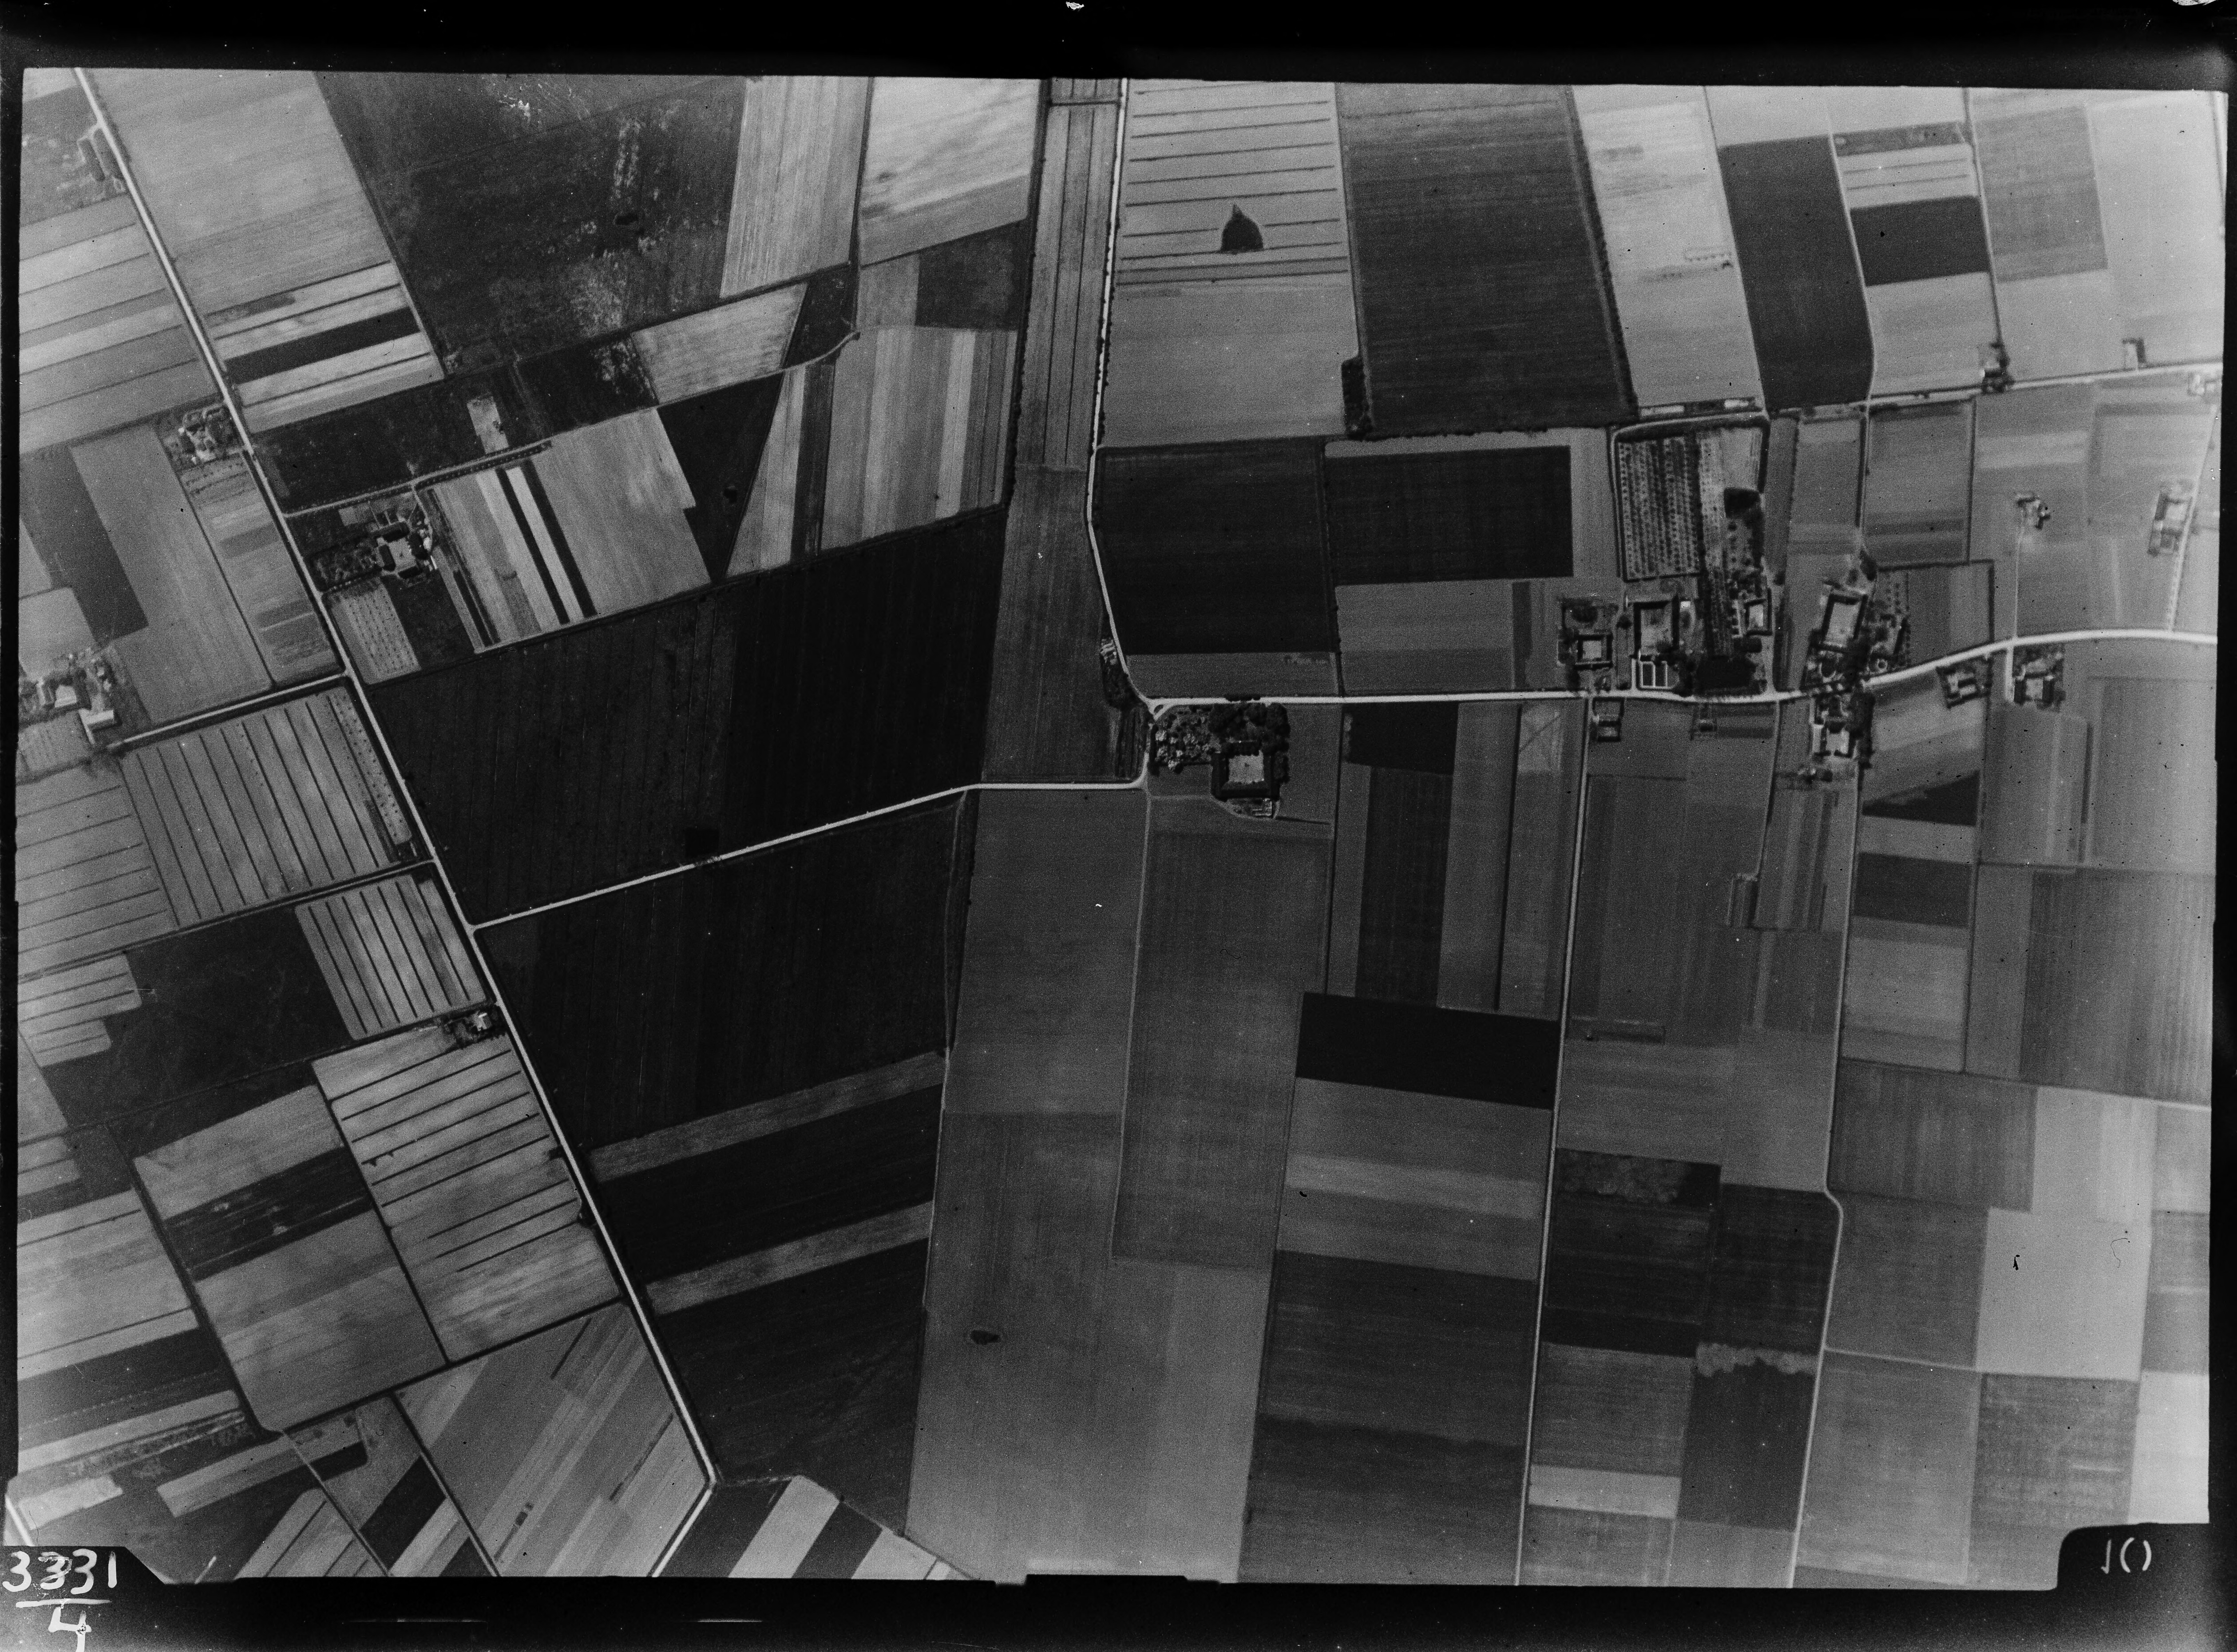 Lodfoto fra 1926 taget 666 meter fra Kalvebodvej 96A